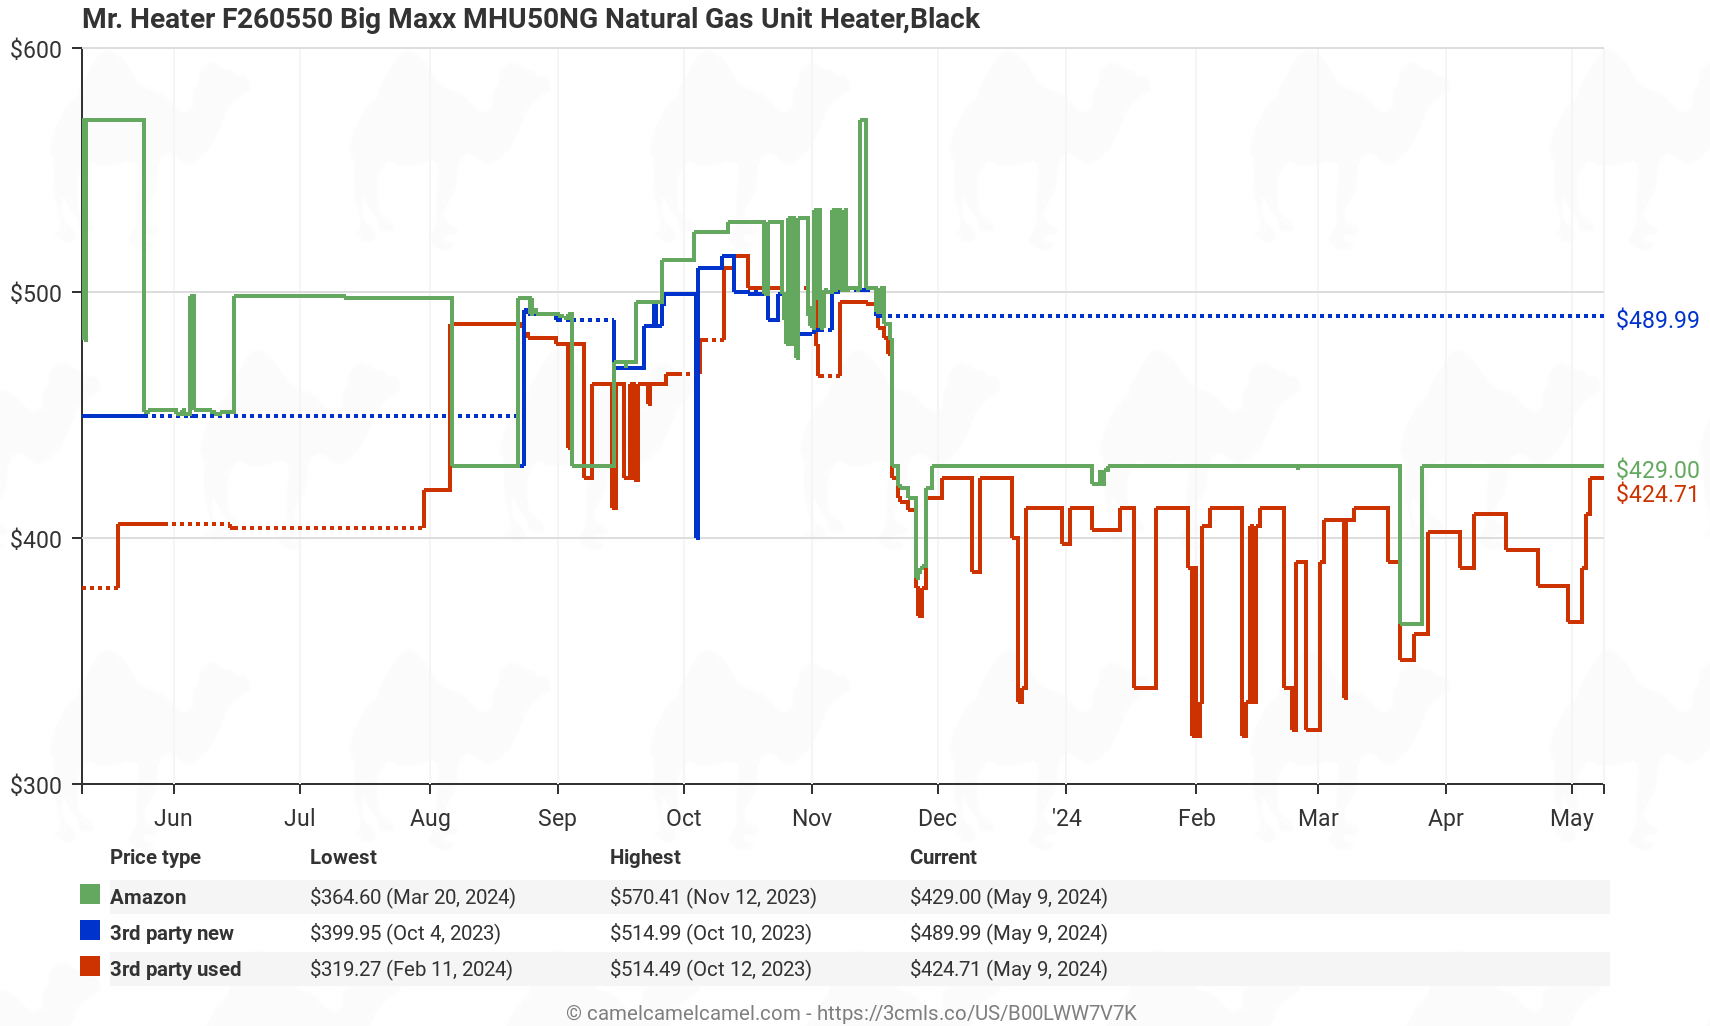 Mr. Heater F260550 Big Maxx MHU50NG Natural Gas Unit Heater - Price History: B00LWW7V7K